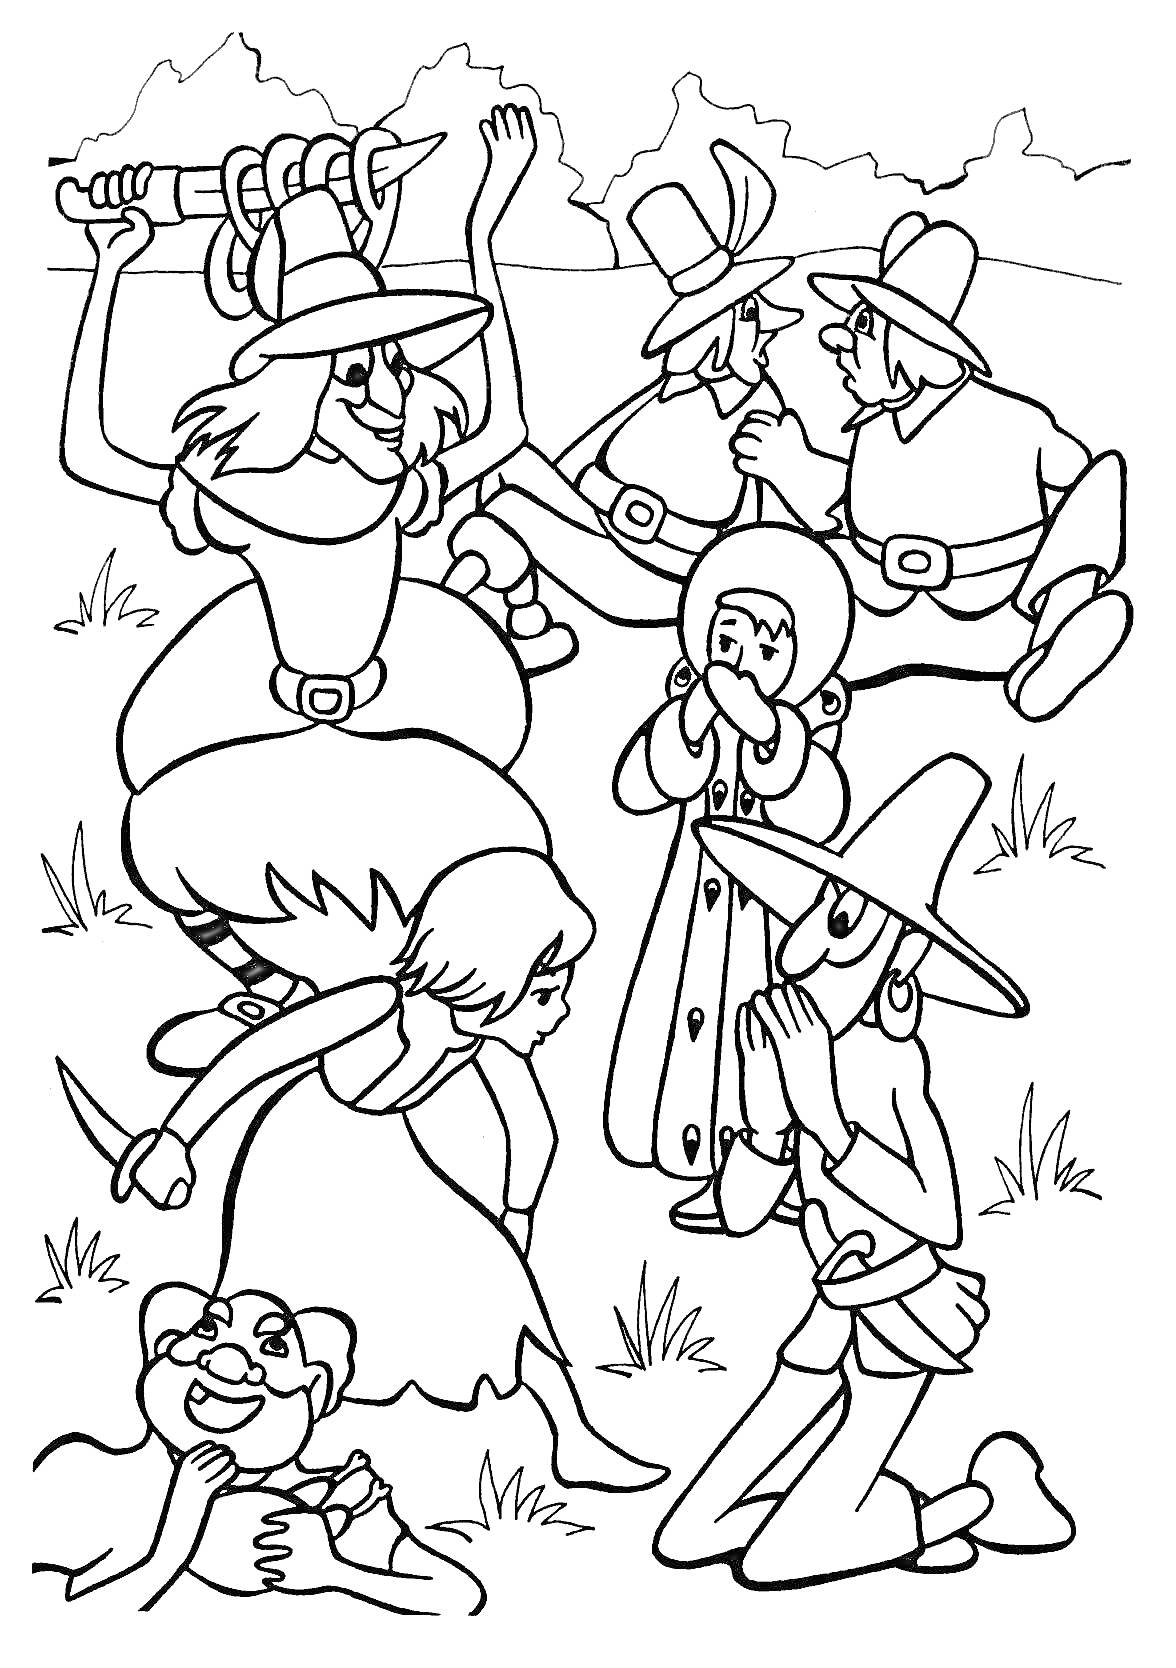 Группа людей в костюмах сражается со шпагами на лугу, мужчина с пистолетами, шляпы с перьями